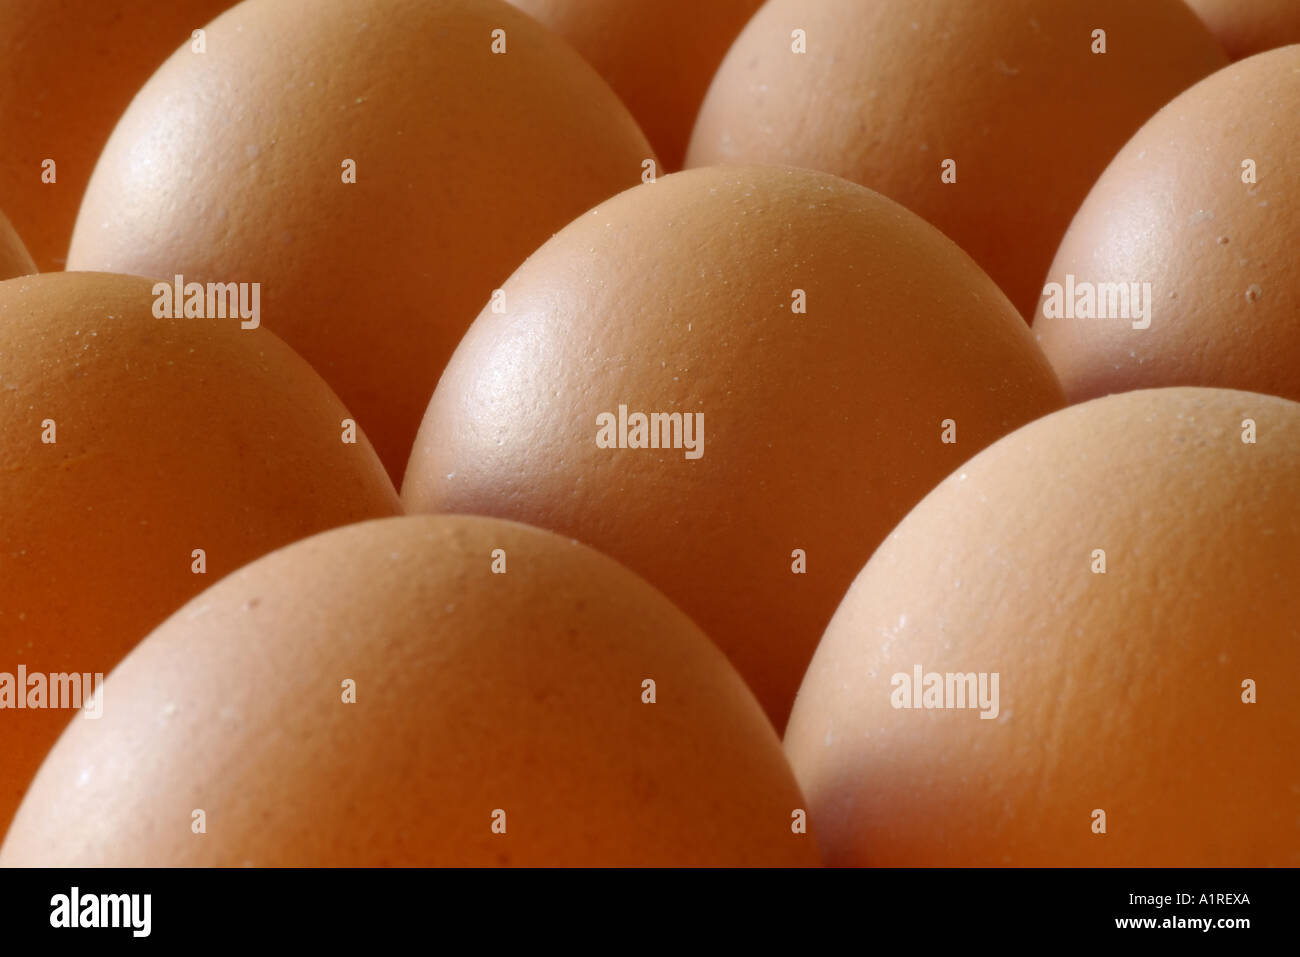 Braunen Eiern, close-up. Hinweis: Fokus auf das Ei in der Mitte. Stockfoto